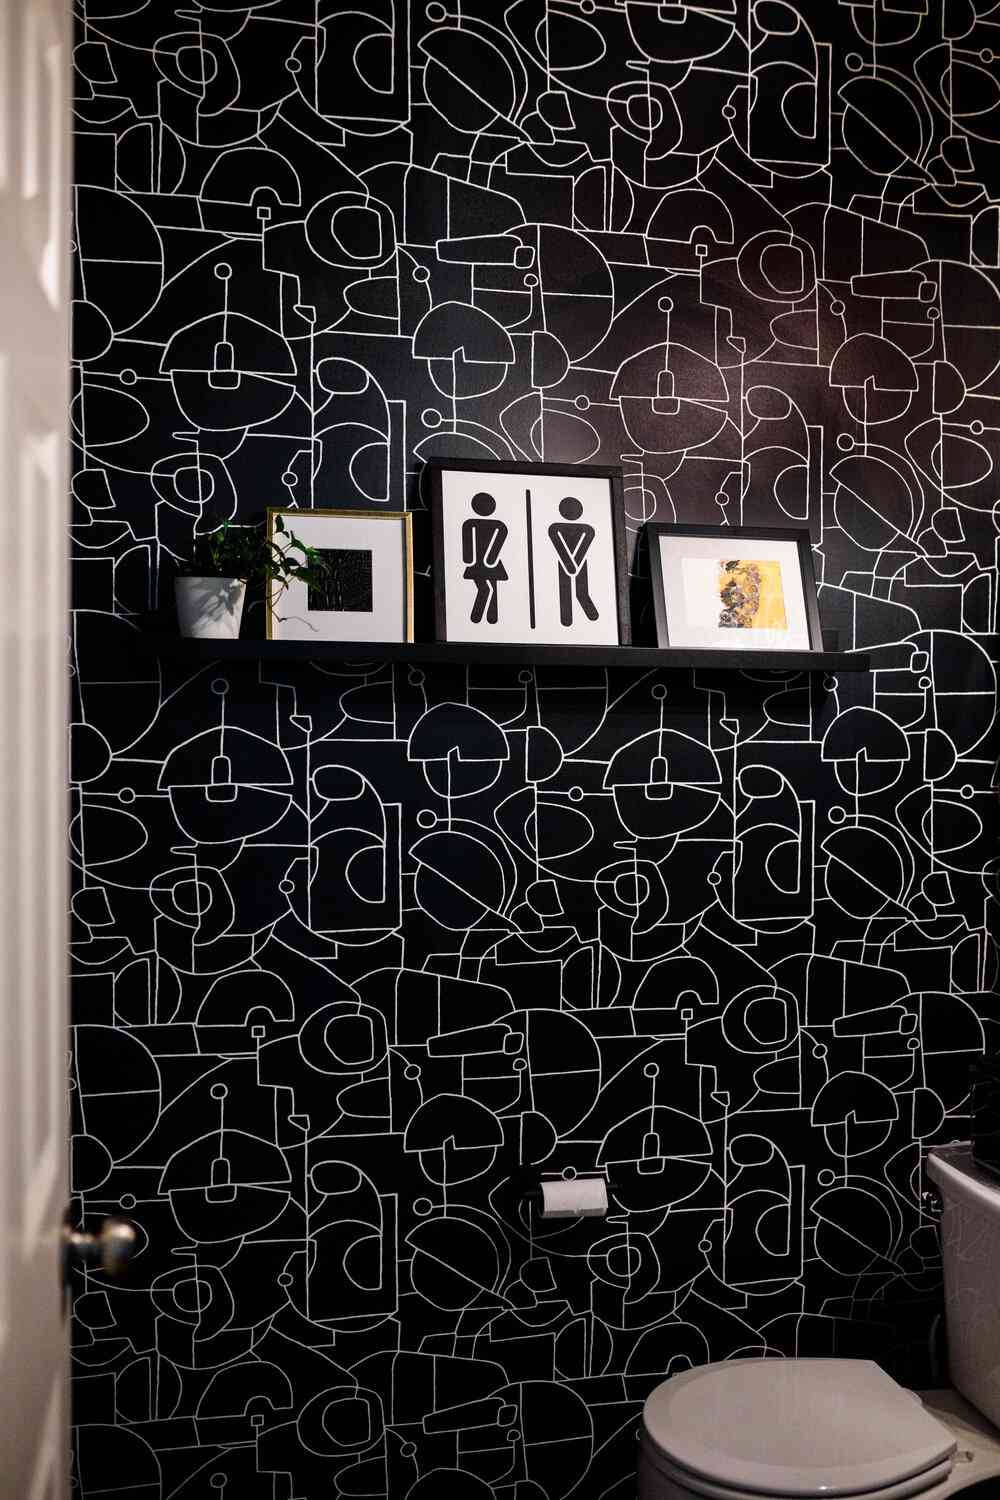 Toiletteschwarz-weiß Grafikzeichnung Innenraum Wallpaper